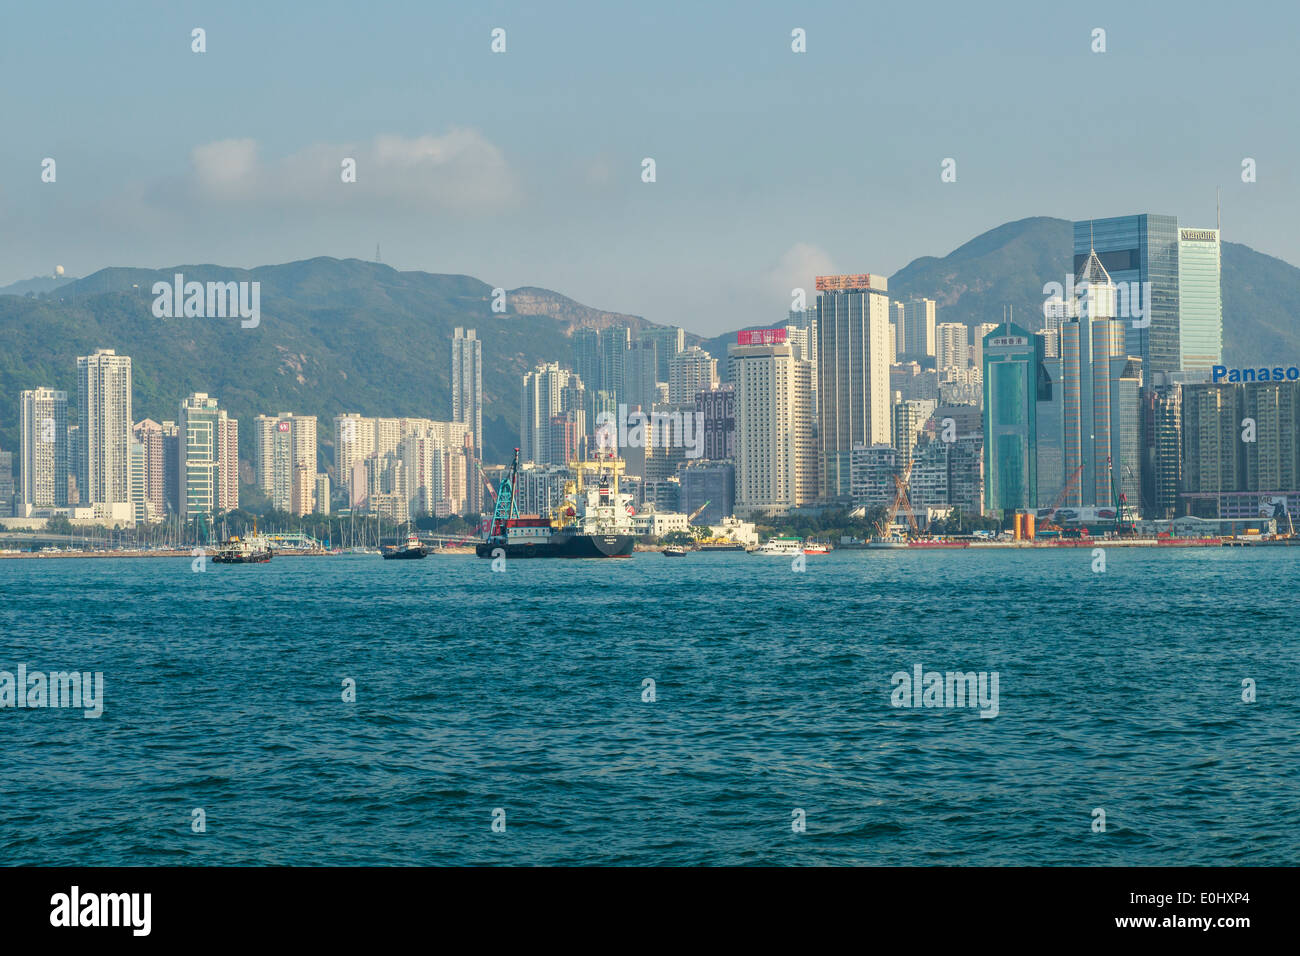 Les immeubles de grande hauteur de l'île de Hong Kong Banque D'Images